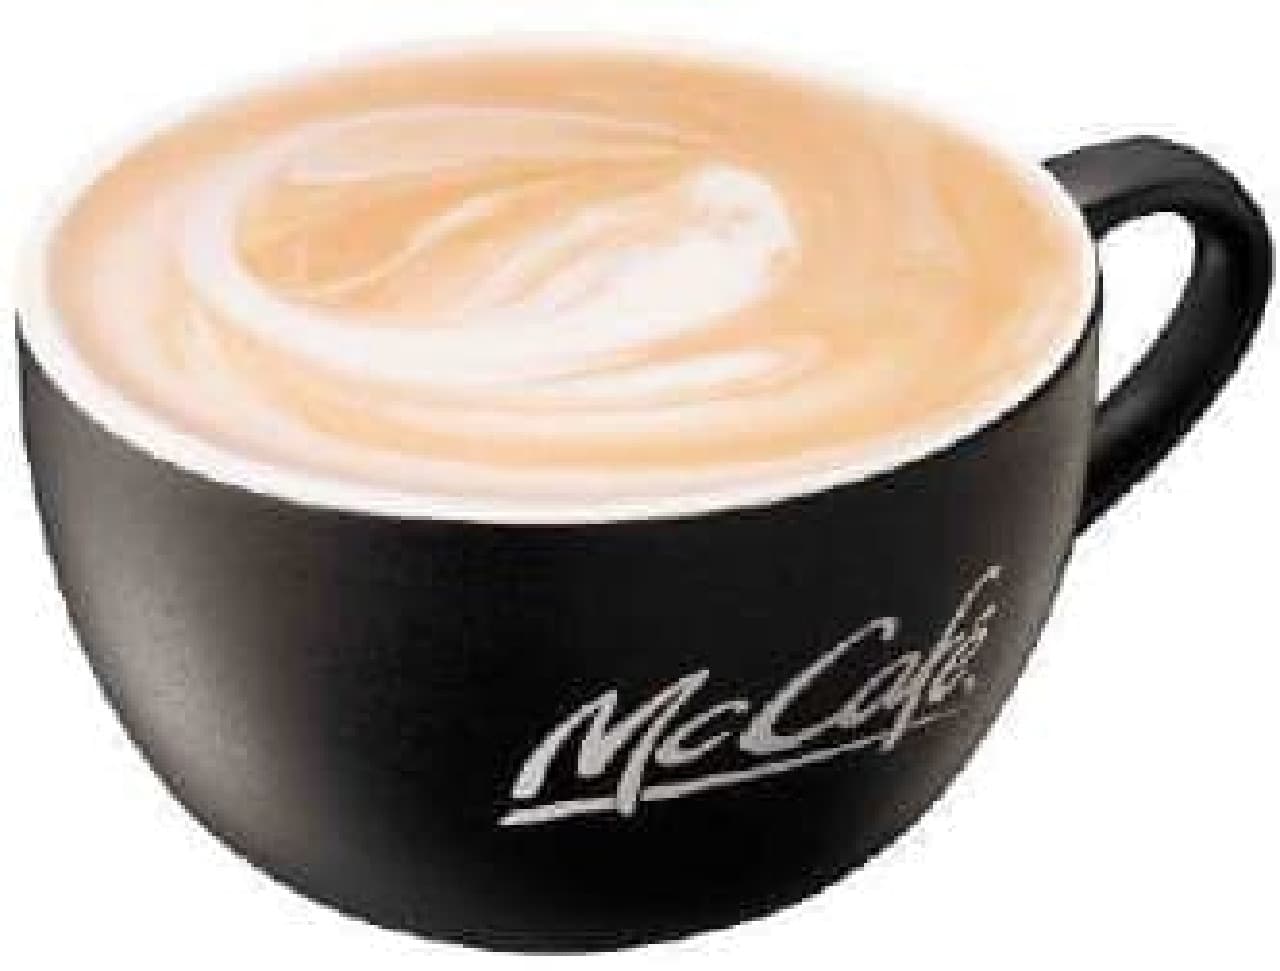 McCafe "Tea Latte"